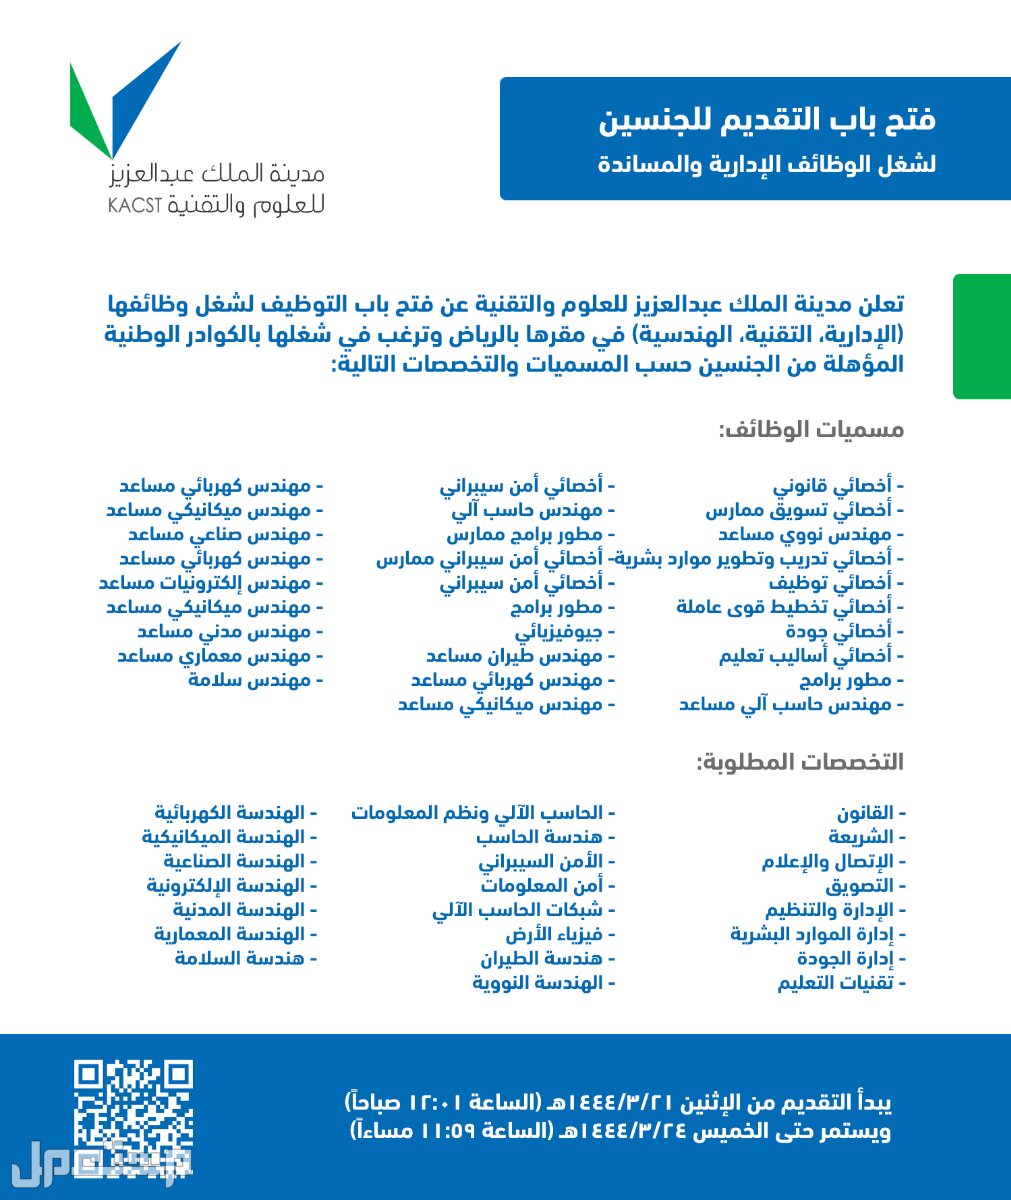 كل ما تحتاج إلى معرفته حول وظائف مدينة الملك عبدالعزيز للعلوم والتقنية في عمان وظائف مدينة الملك عبدالعزيز للعلوم والتقنية